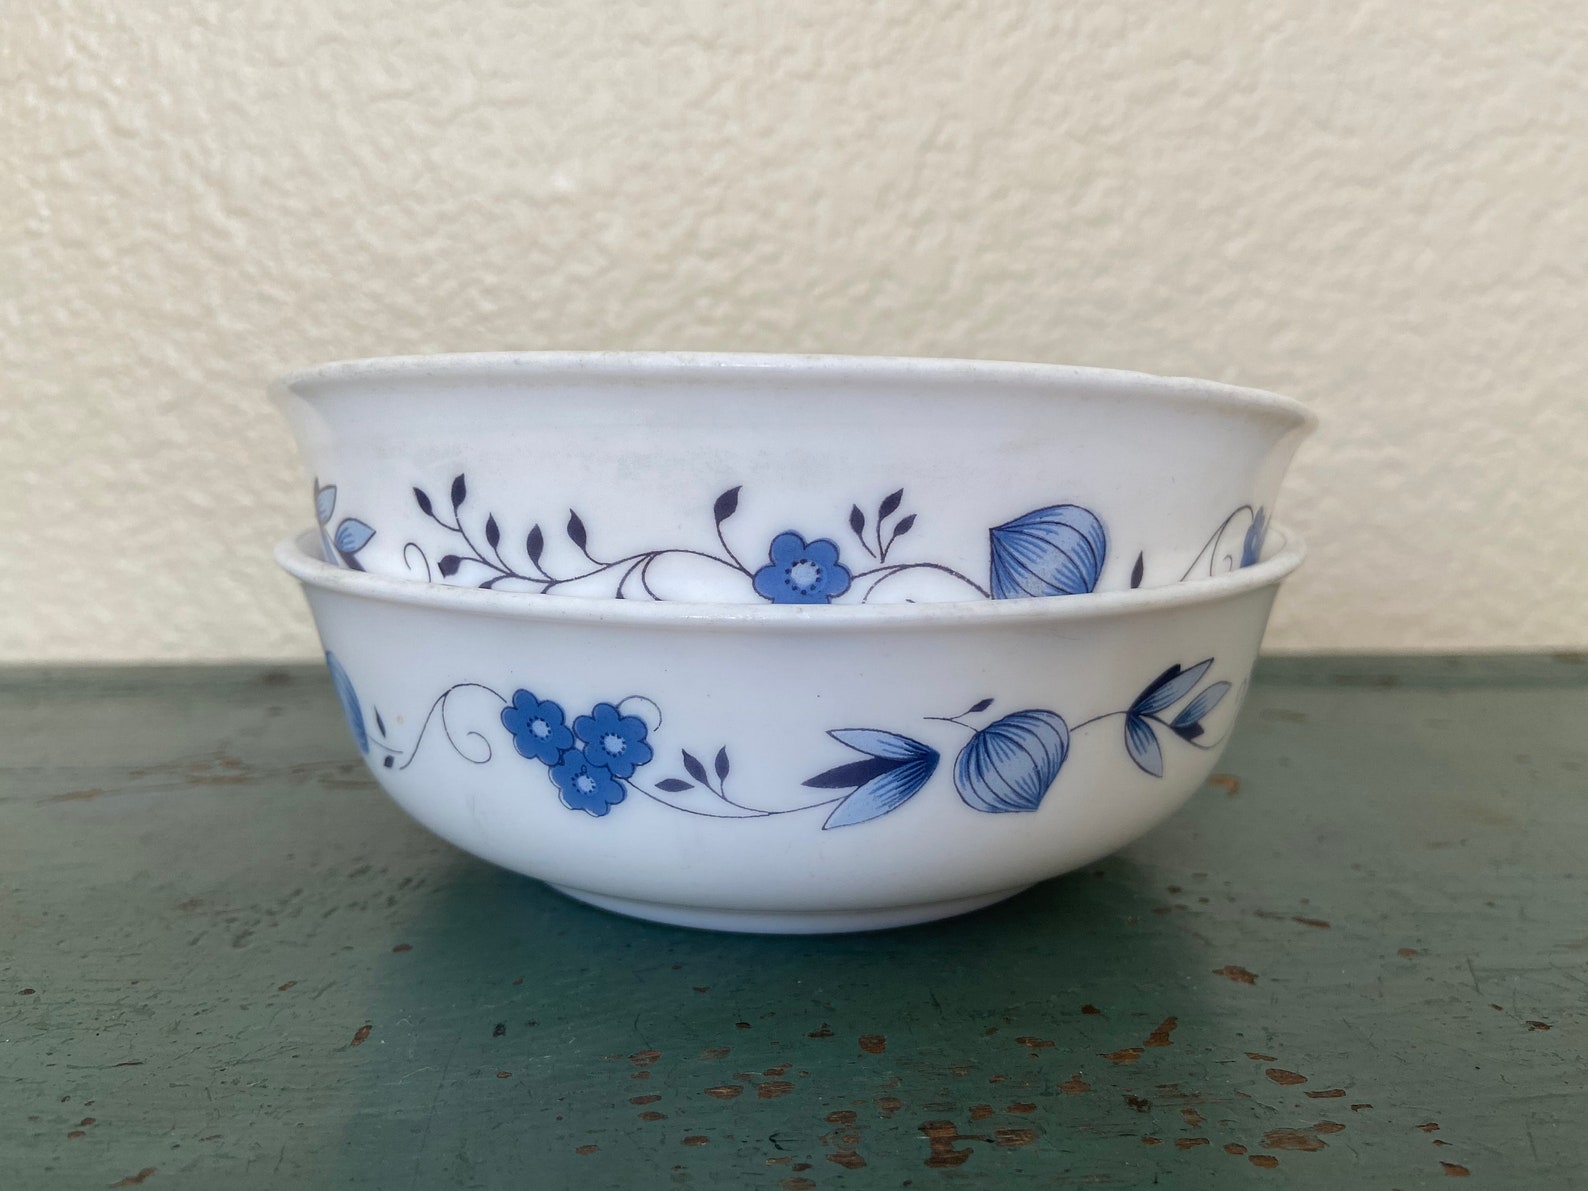 2 Arcopal France Cereal Bowls Blue Vining Floral Pattern | Etsy